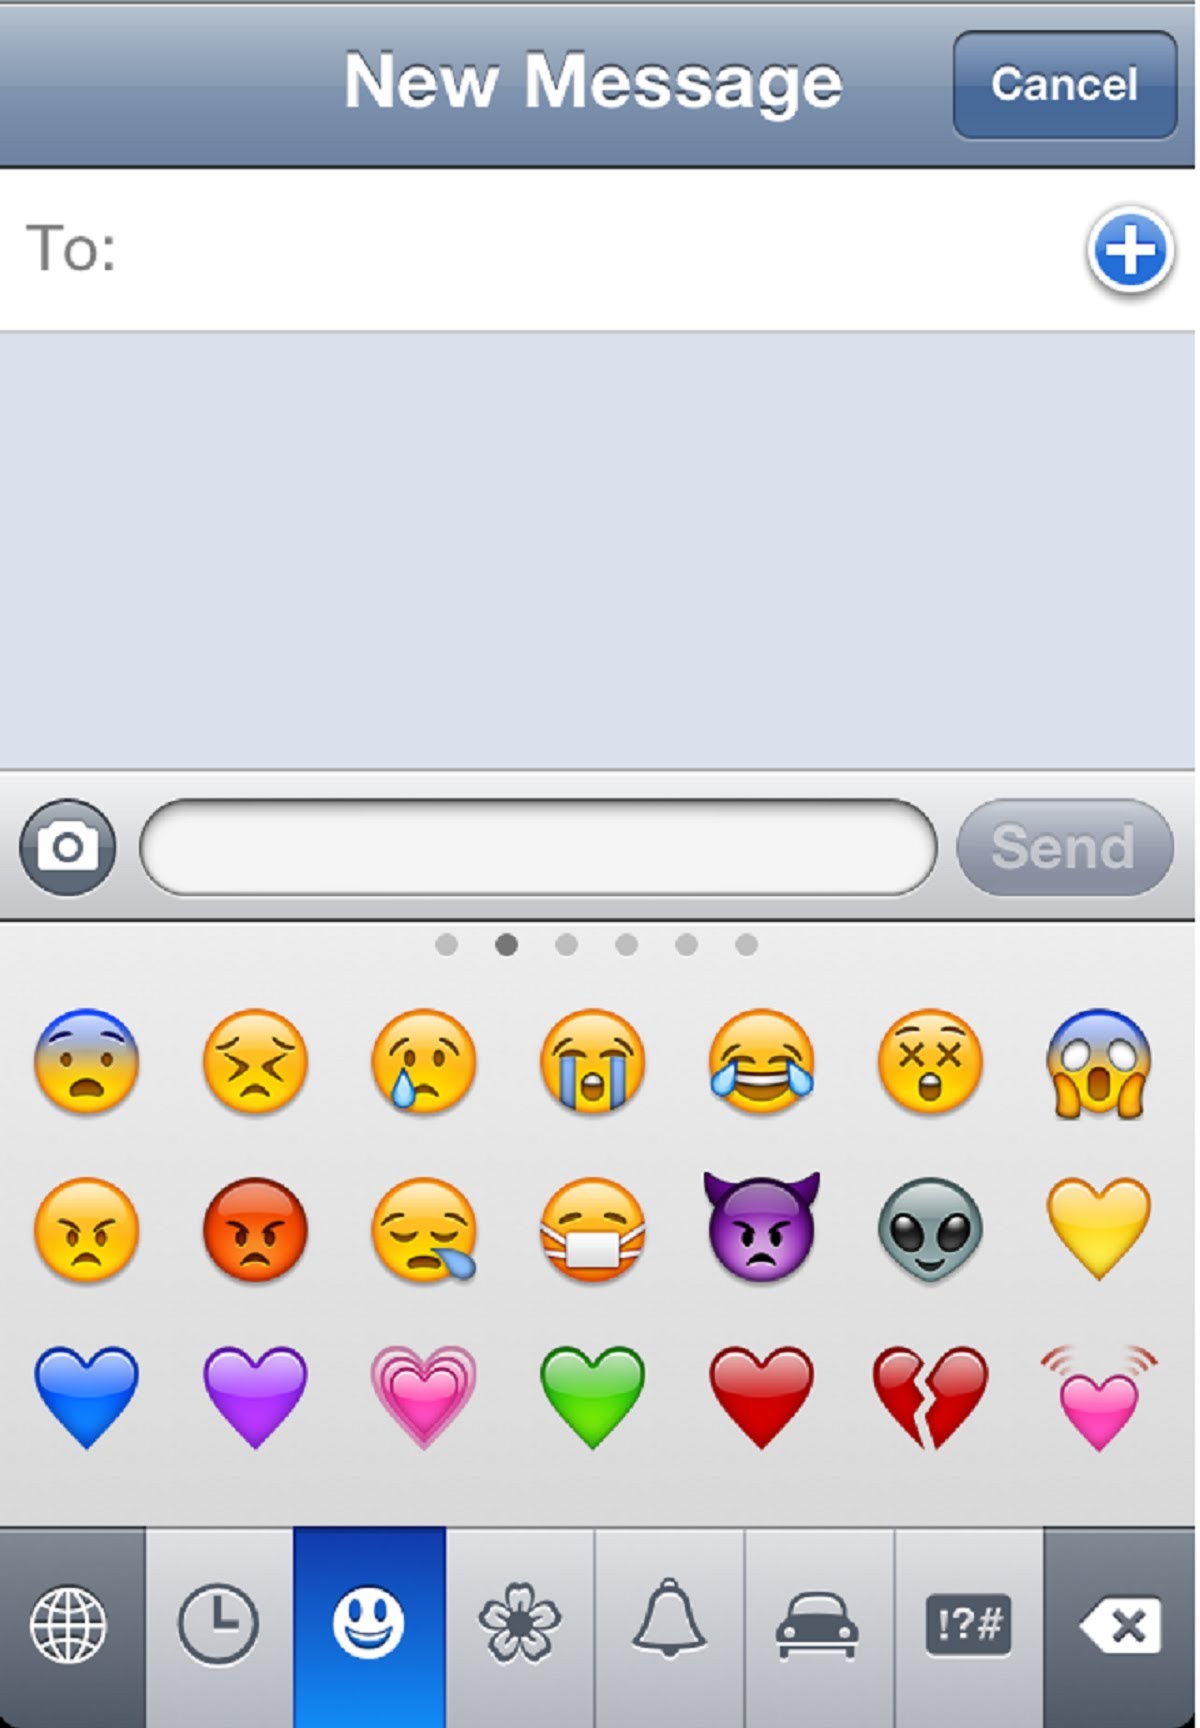 Add Emoji Keyboard in Your iPhone